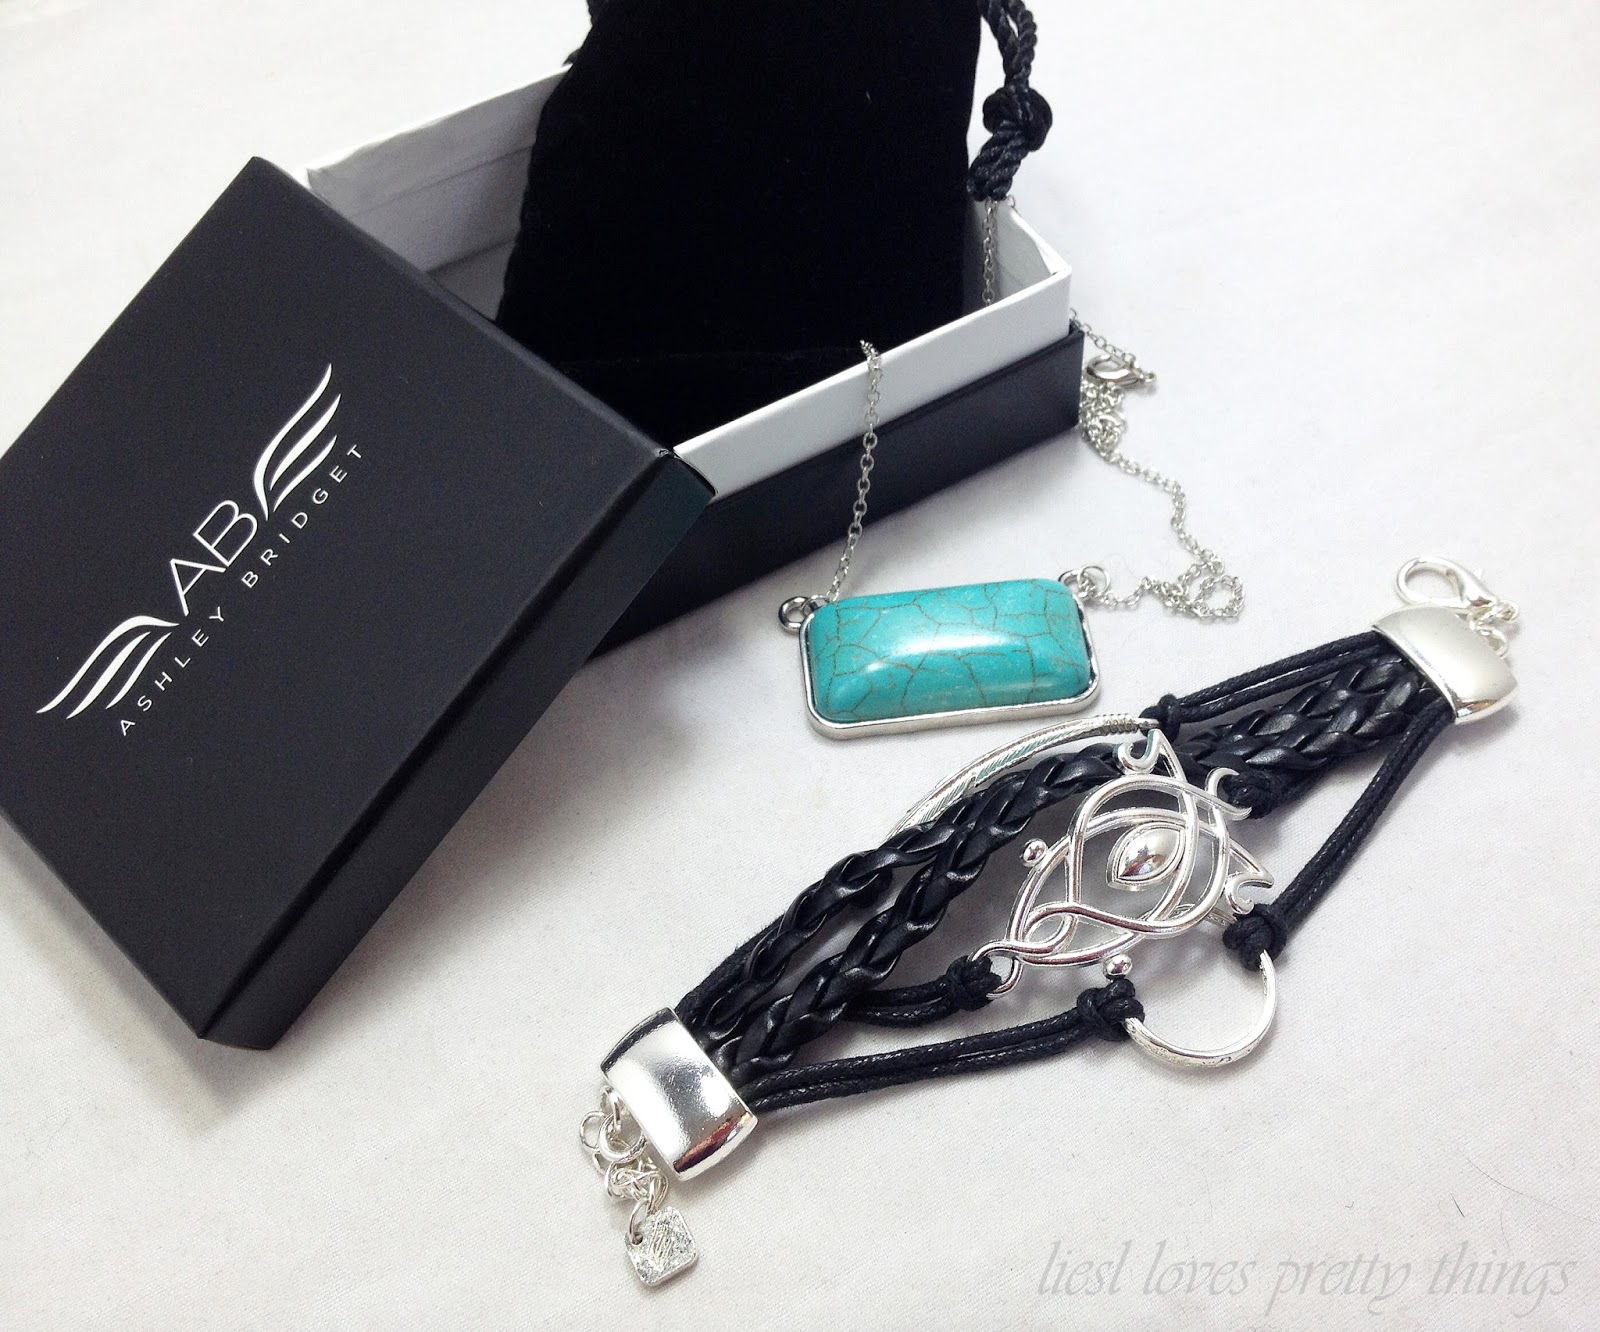 Ashley Bridget Baggins bracelet and Ultramarine necklace